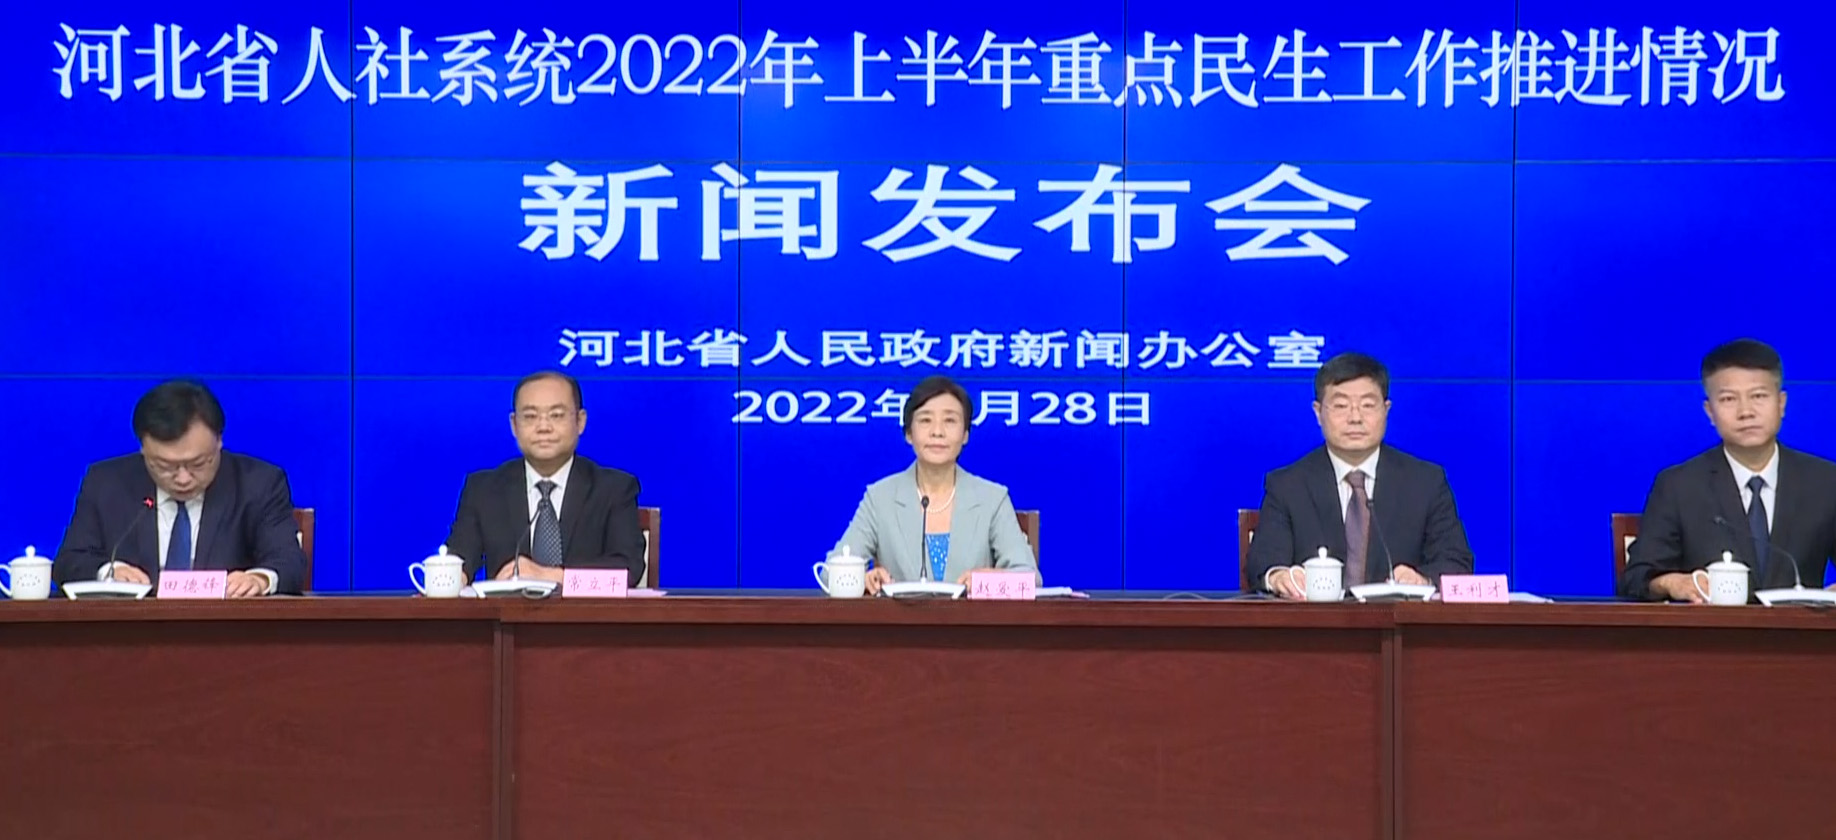 河北省人社系统 2022 年上半年重点民生工作推进情况新闻发布会